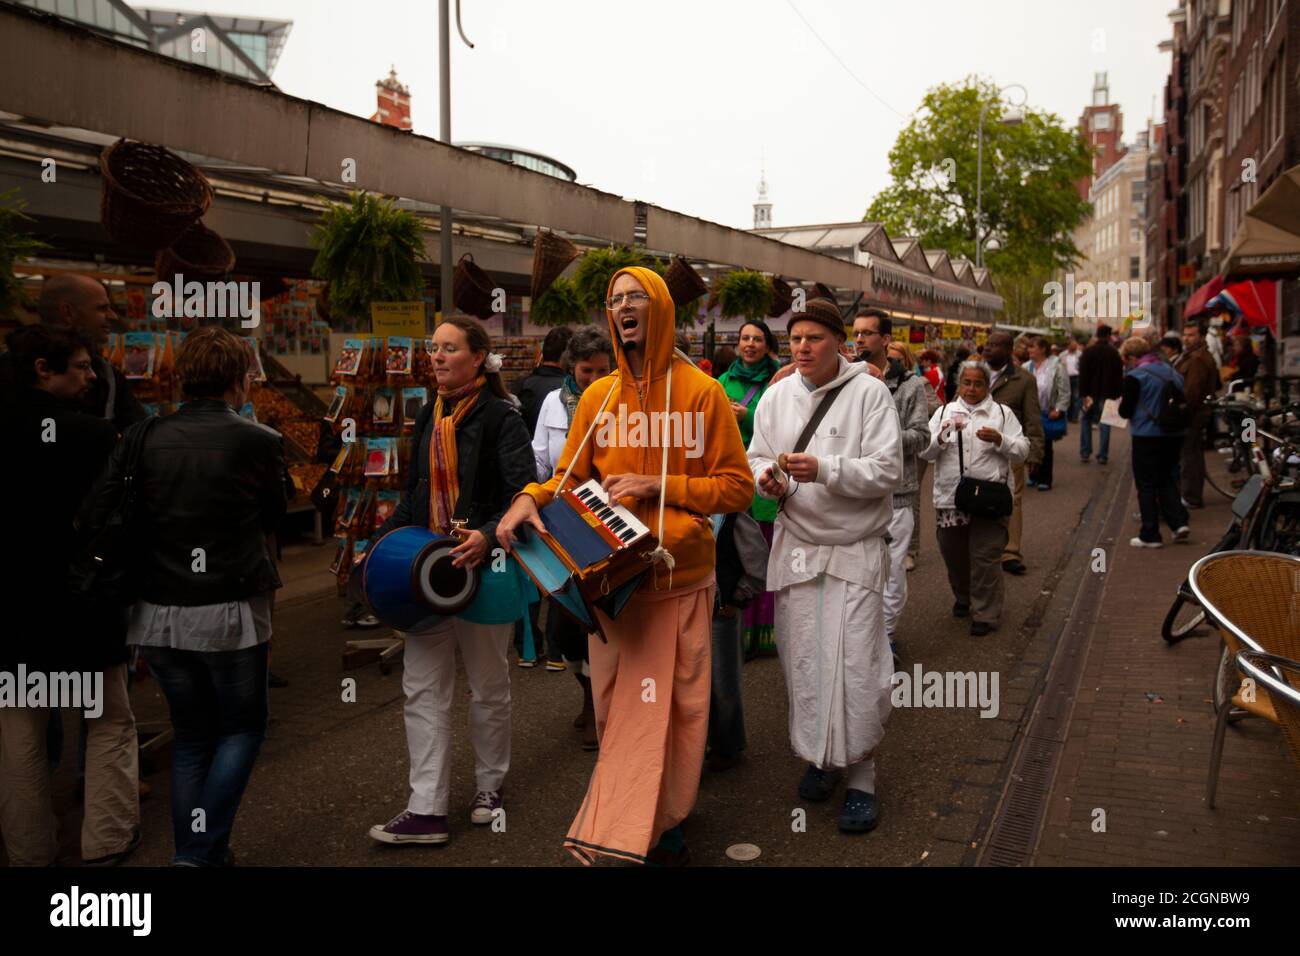 Amsterdam, países Bajos 05/15/2010: Una comunidad religiosa local está haciendo un desfile. Los miembros llevan batas y tocan instrumentos musicales mientras van Foto de stock